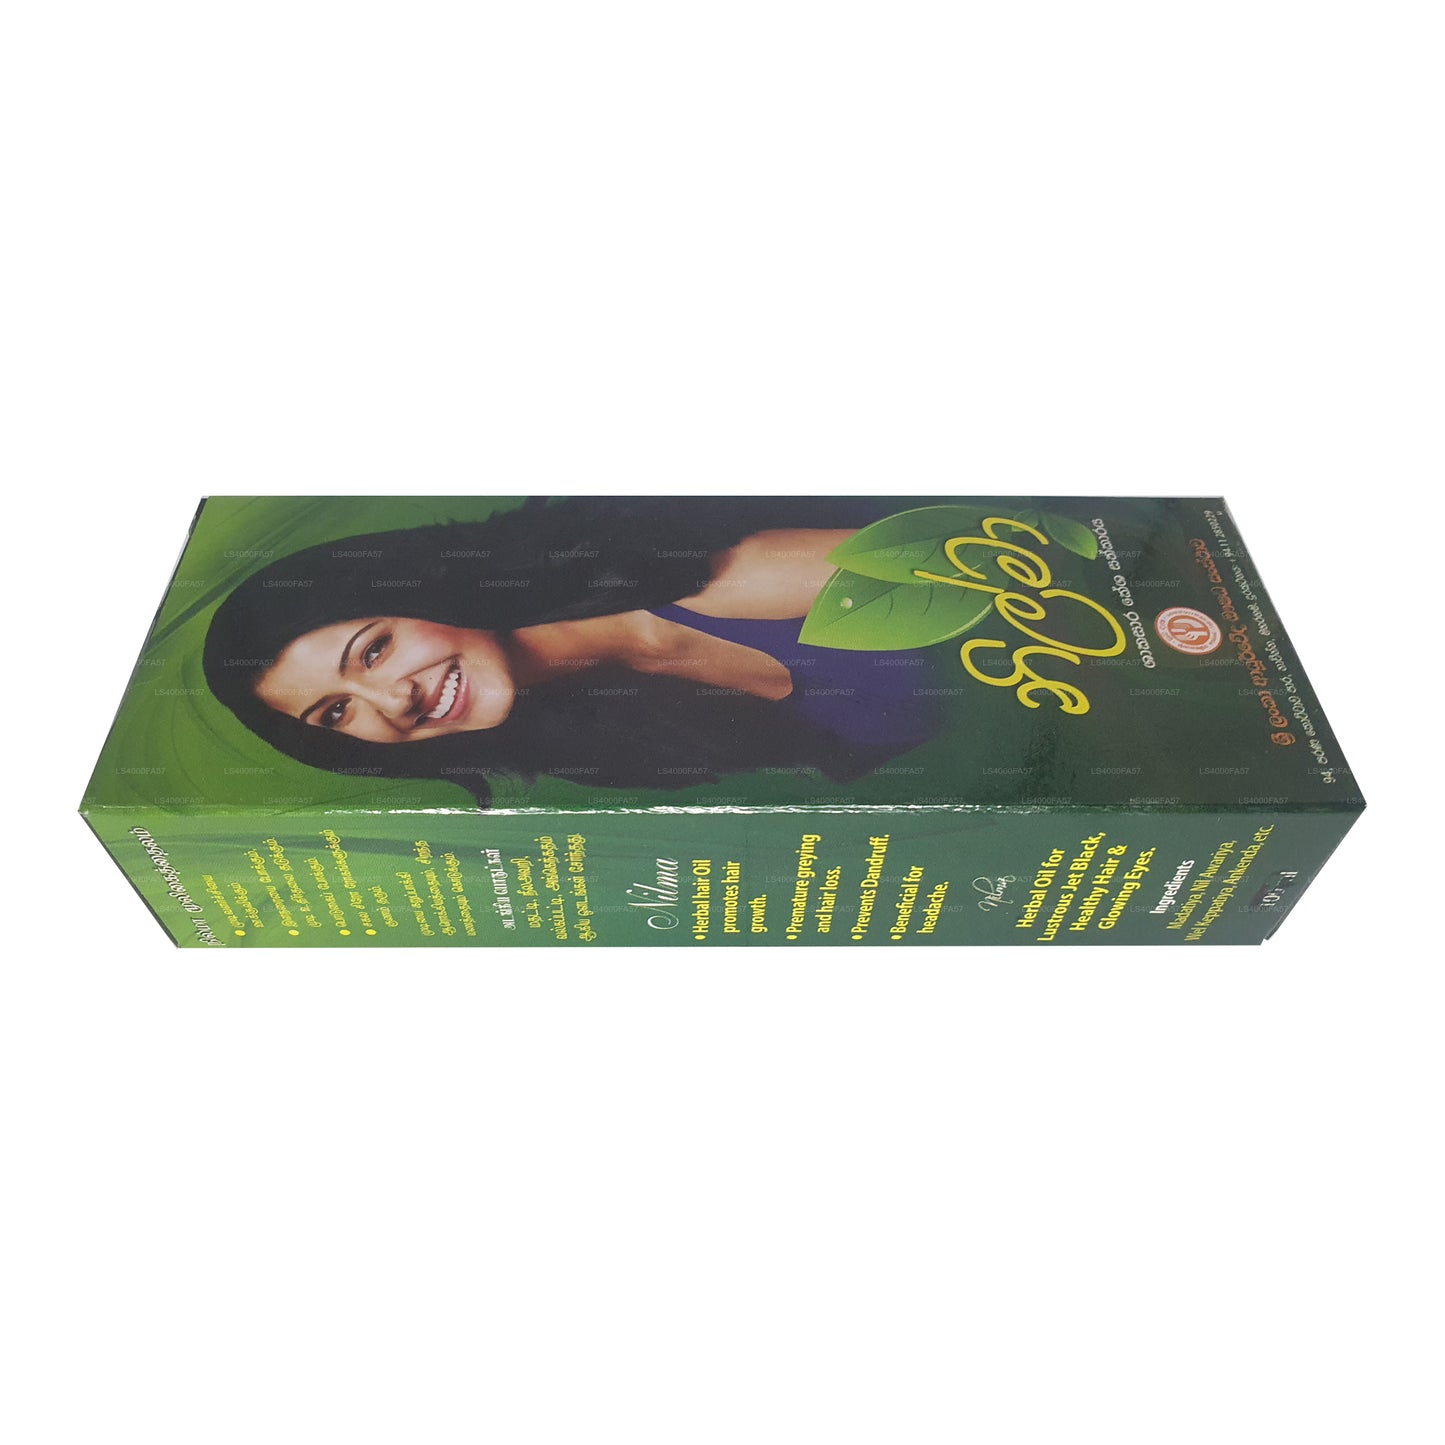 SLADC Nilma bylinný vlasový olej (90ml)